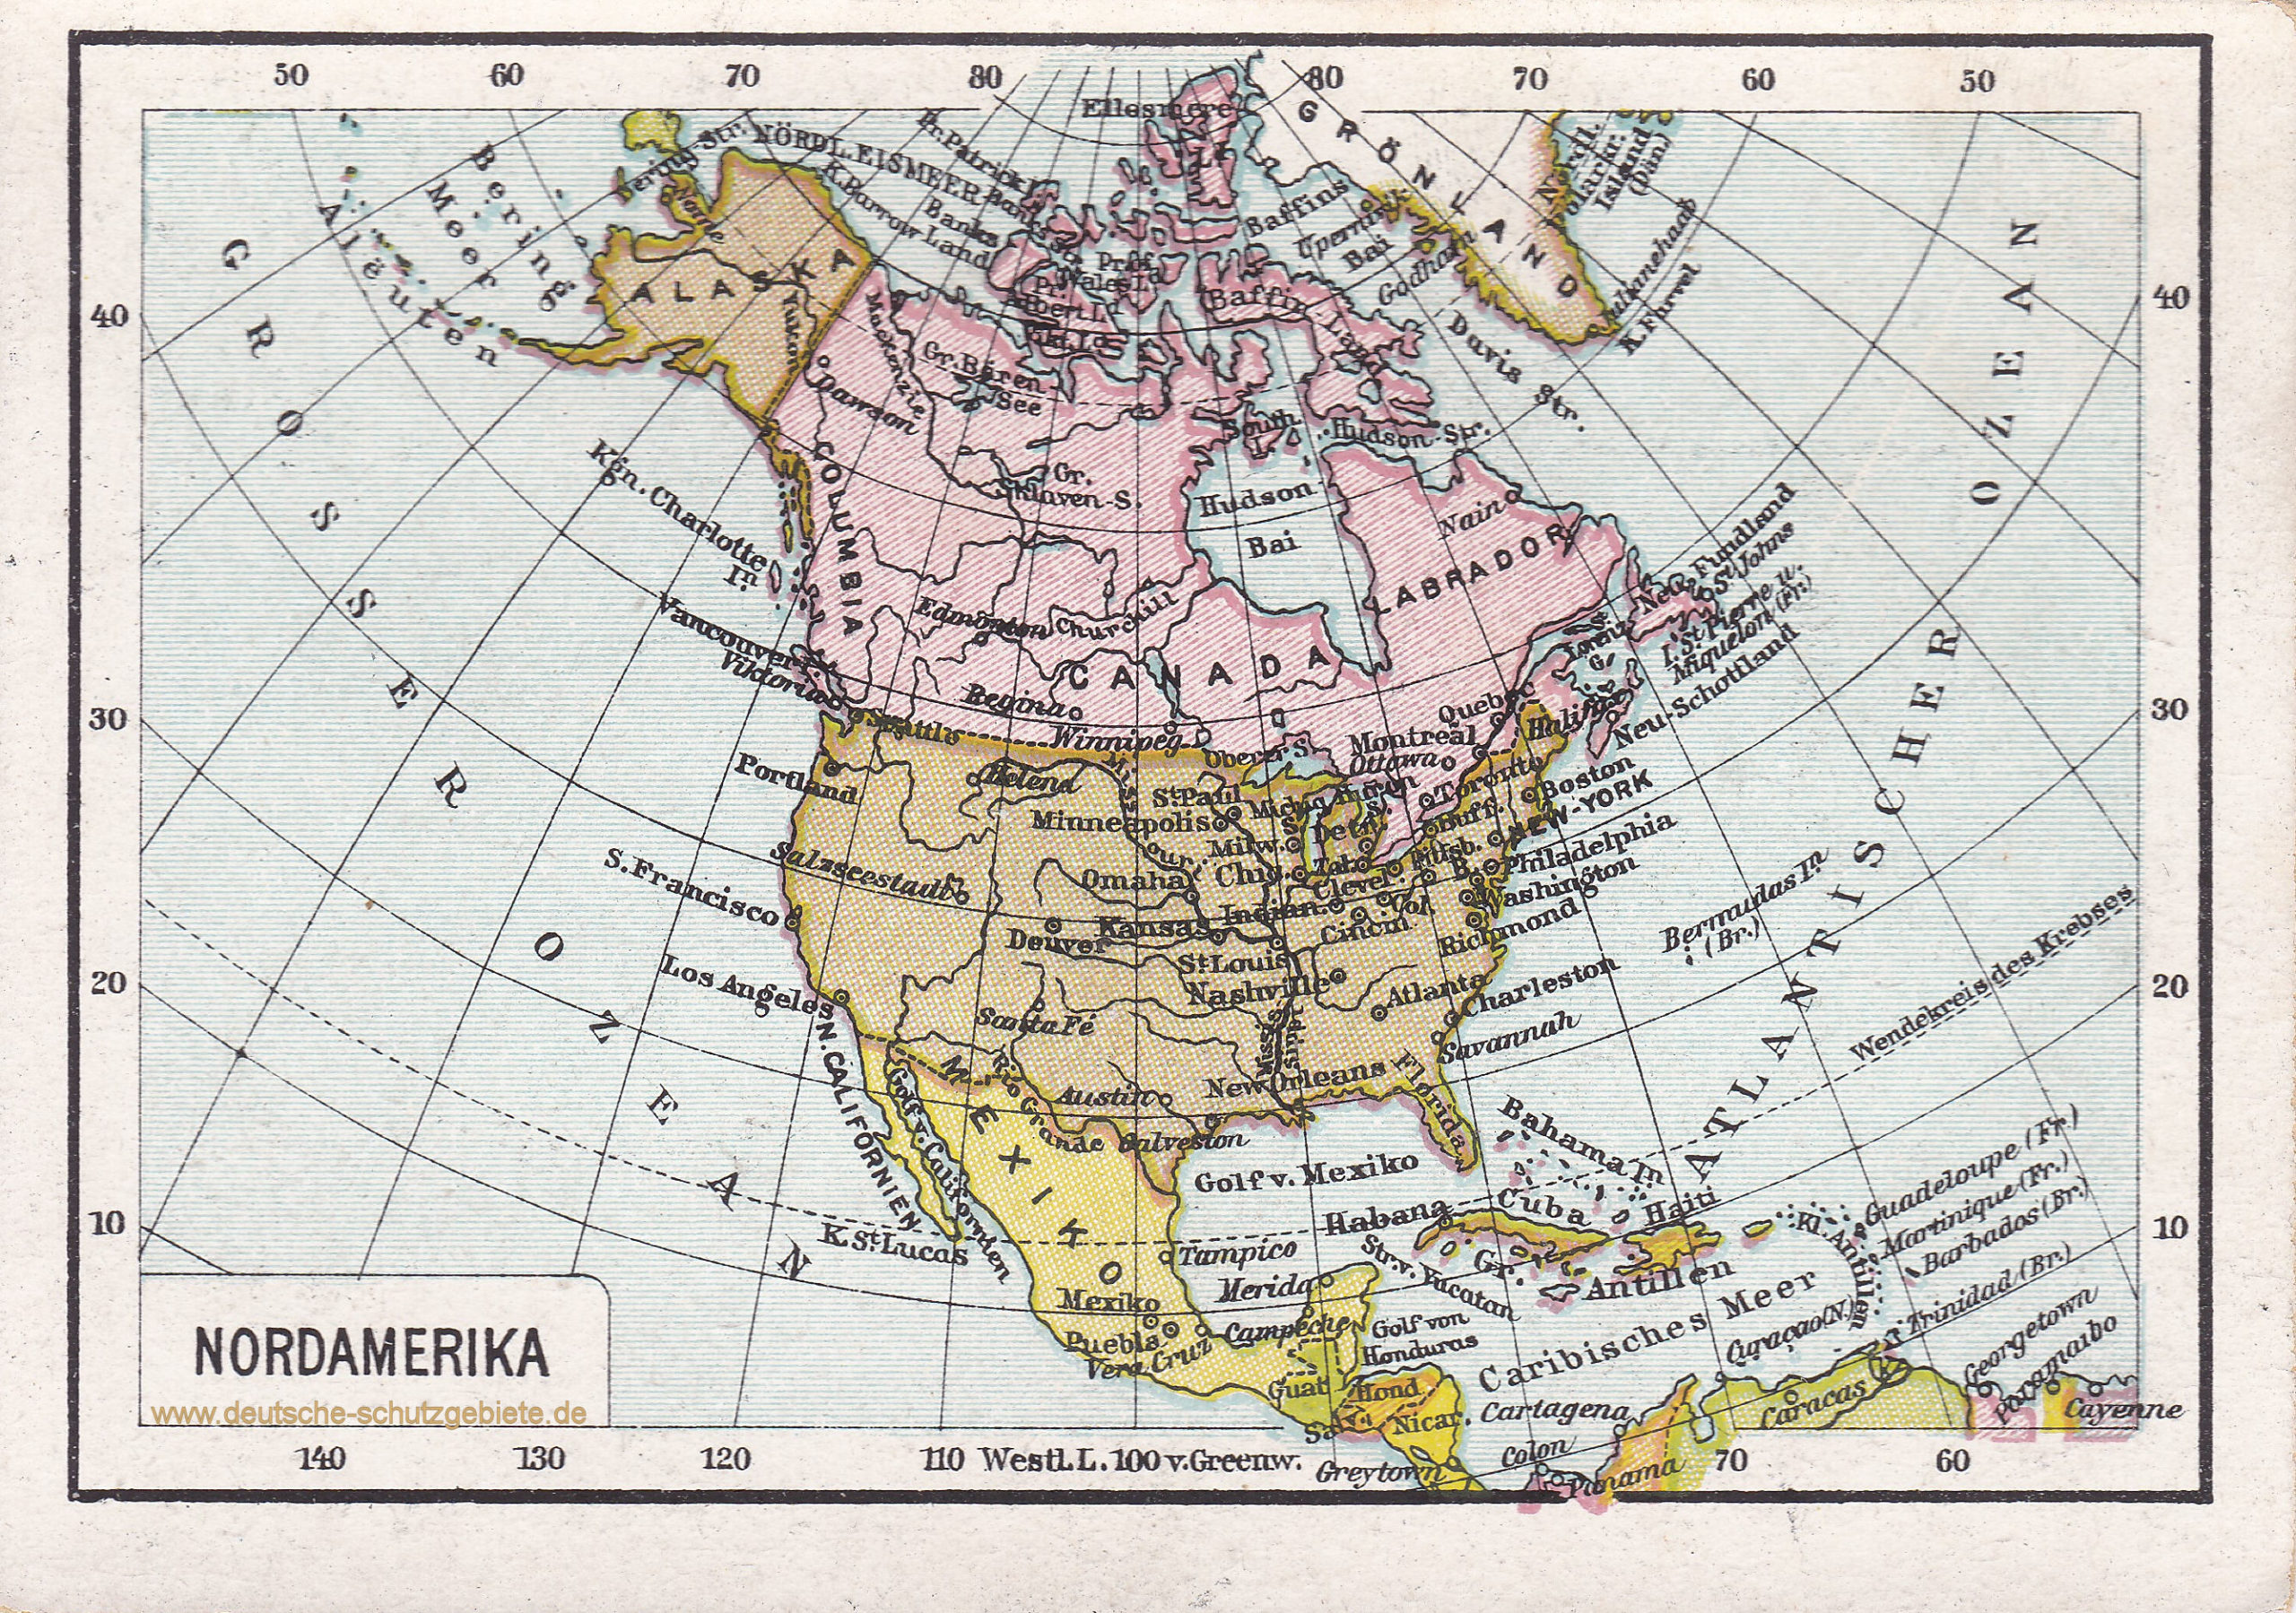 Nordamerika (1912)